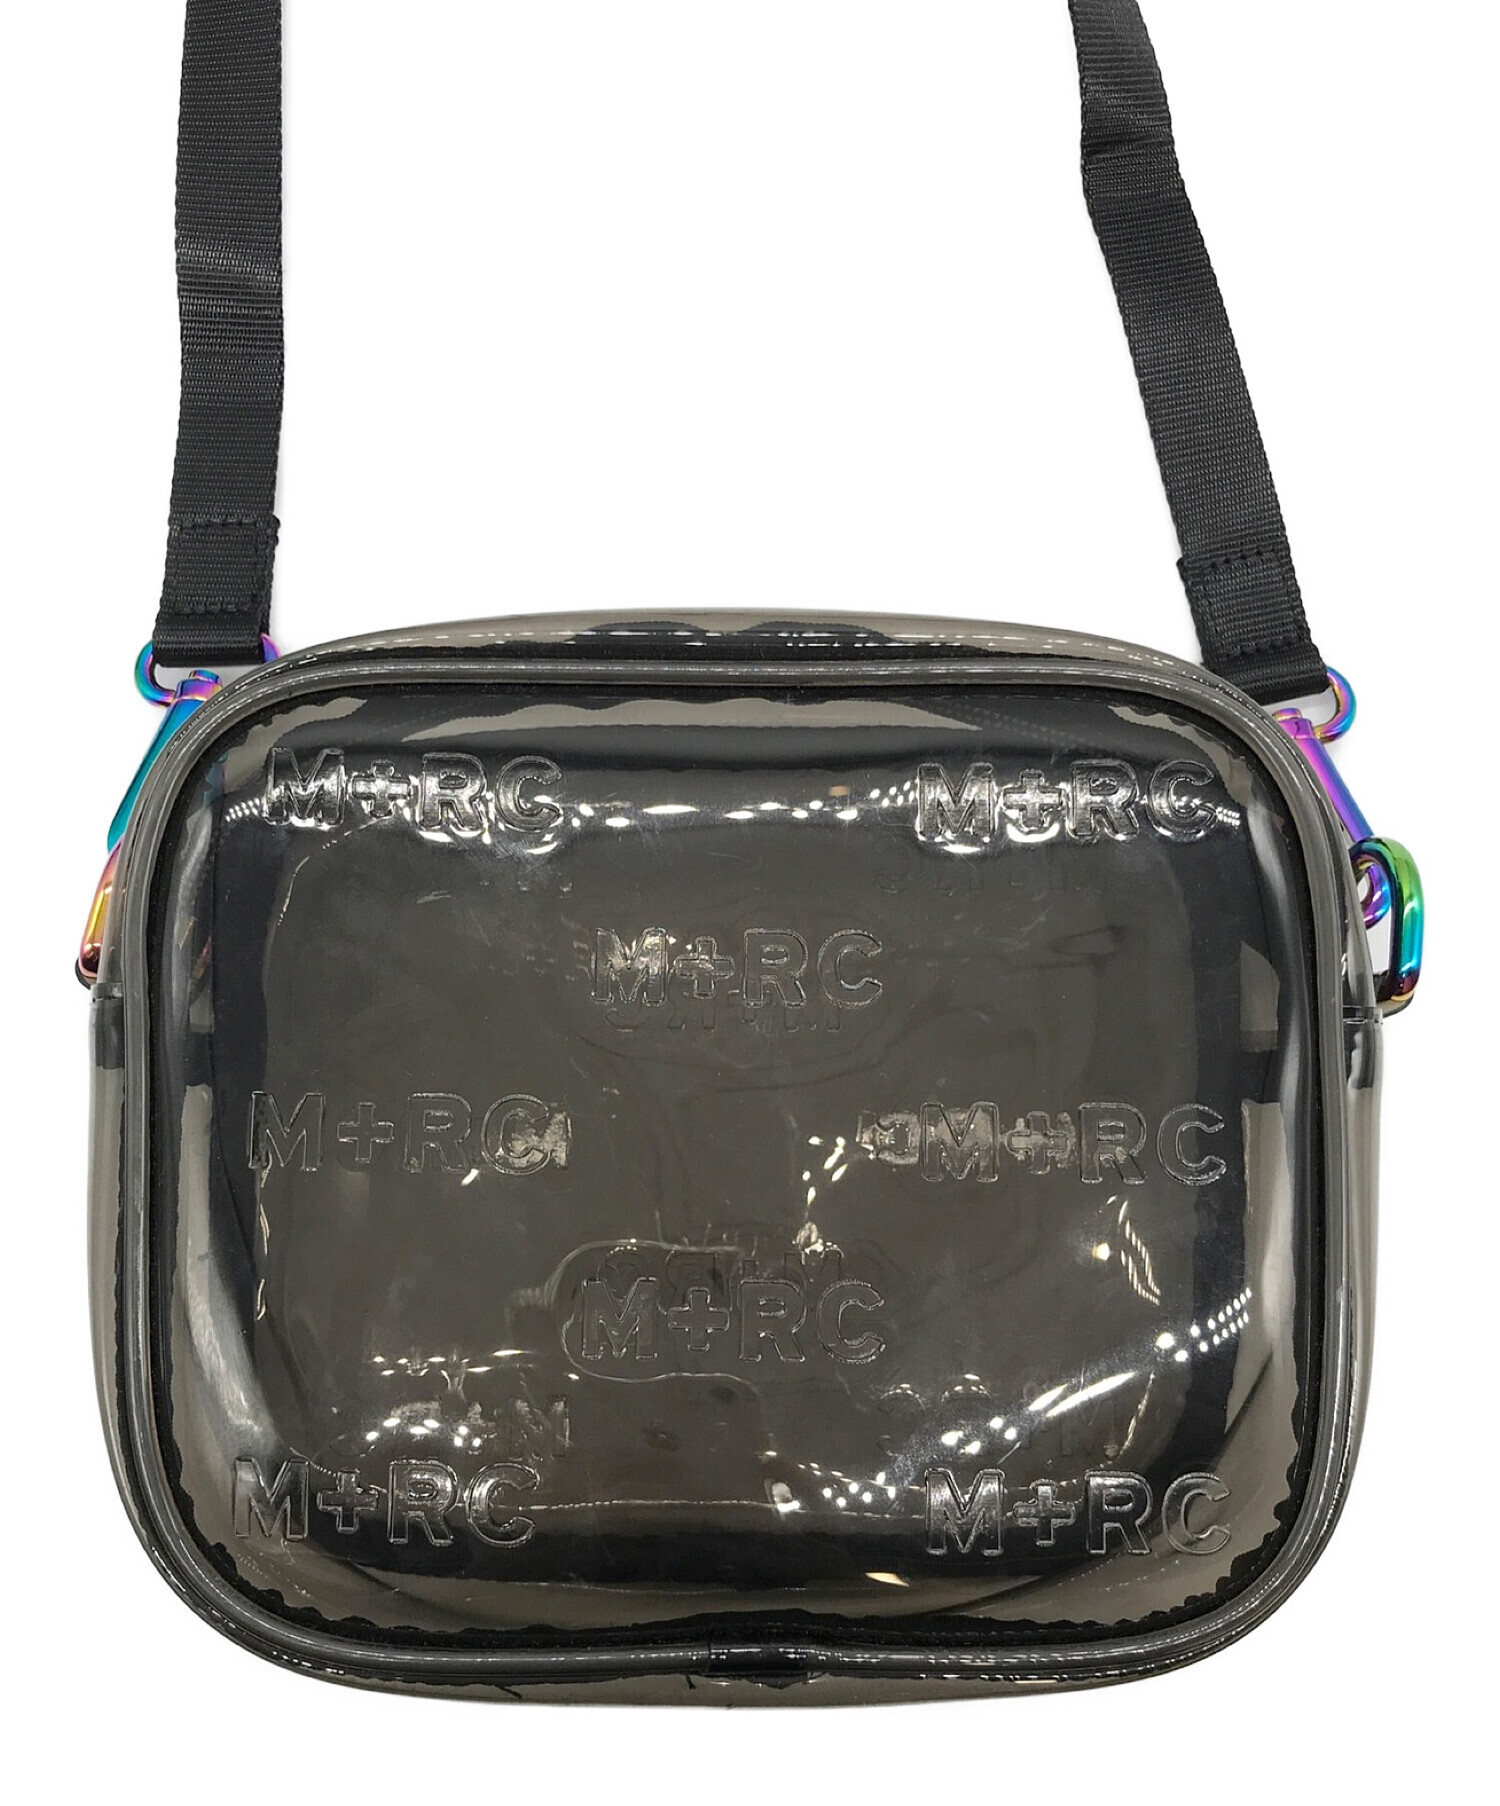 M+RC NOIR マルシェノア BLACK TRANSPARENT bag